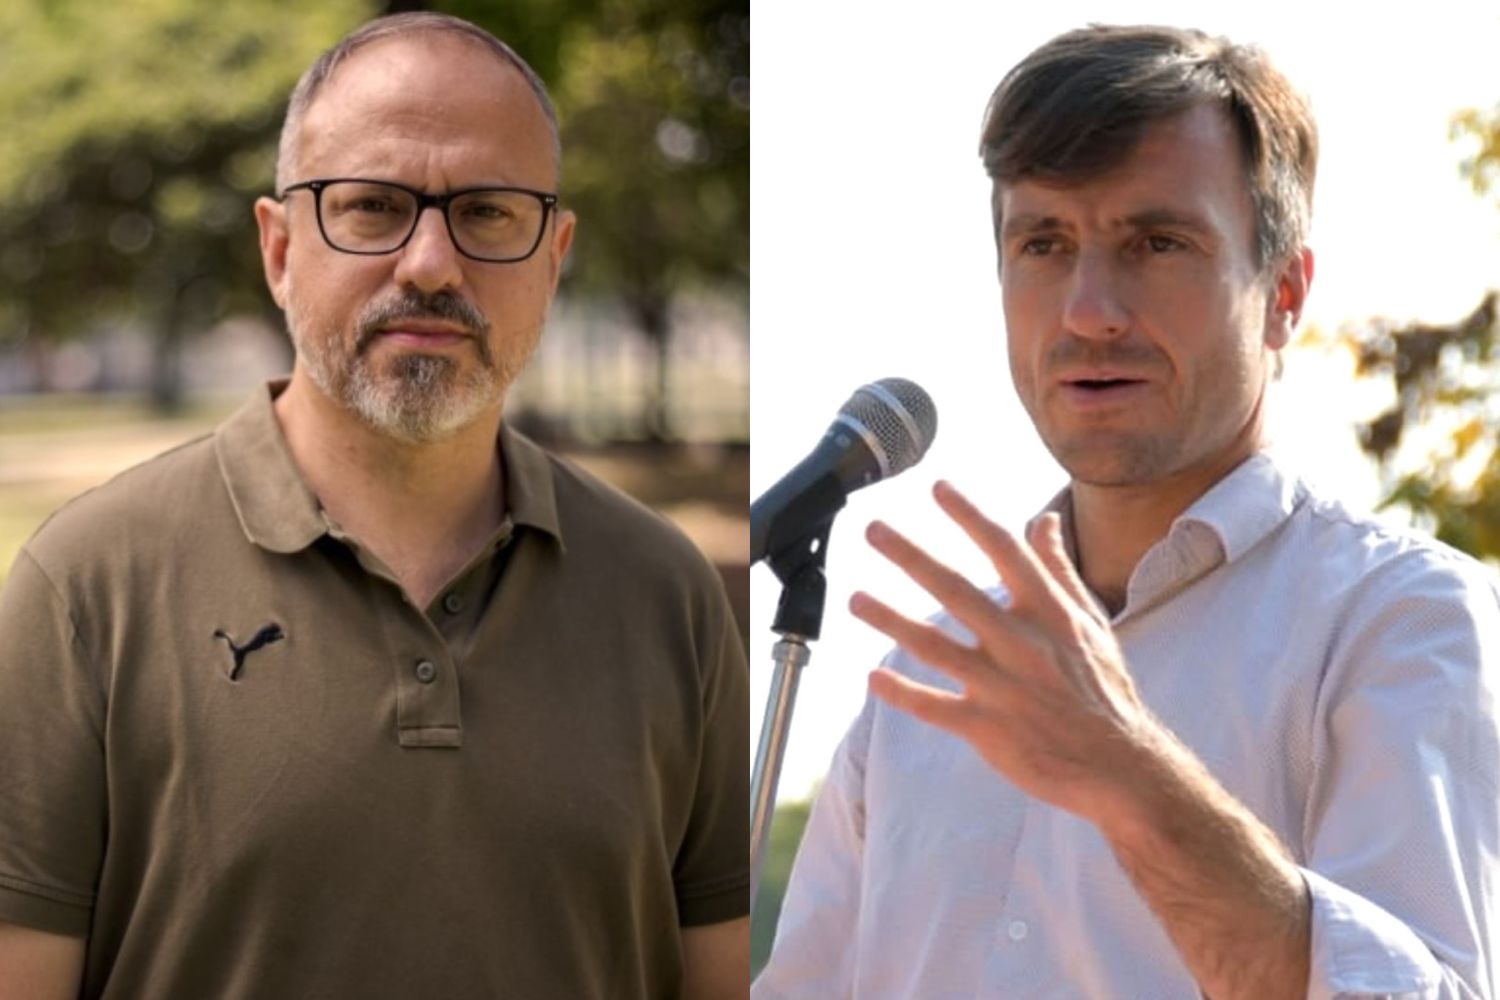 "Empezó la campaña": Diego Valenzuela y Lucas Ghi protagonizaron un insólito cruce en Twitter con reproches y chicanas